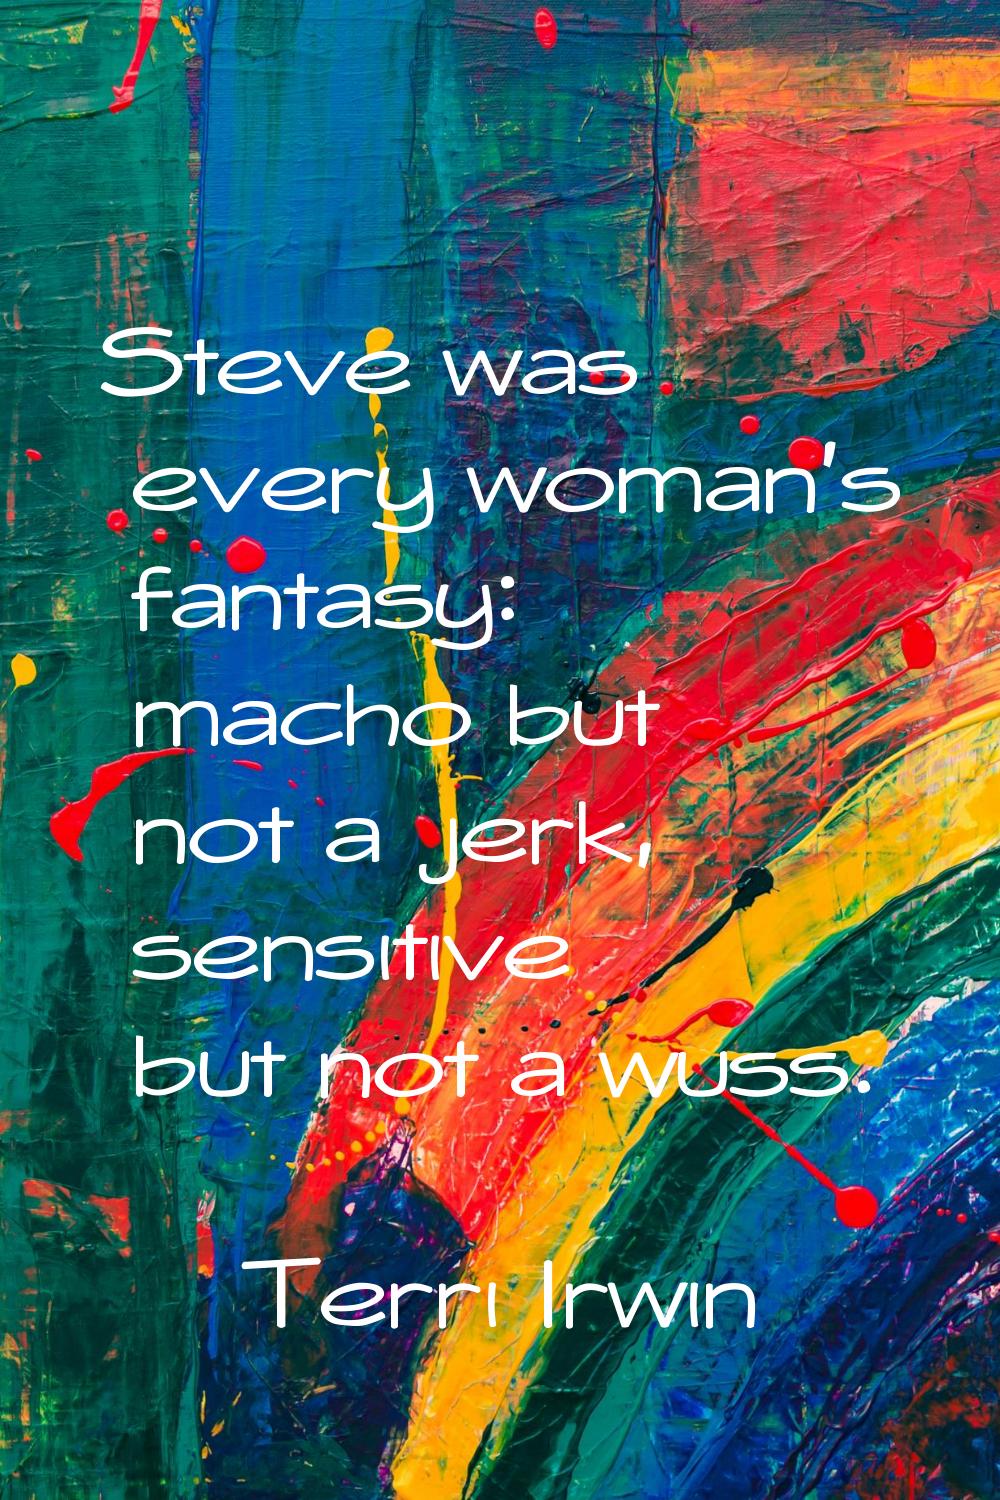 Steve was every woman's fantasy: macho but not a jerk, sensitive but not a wuss.